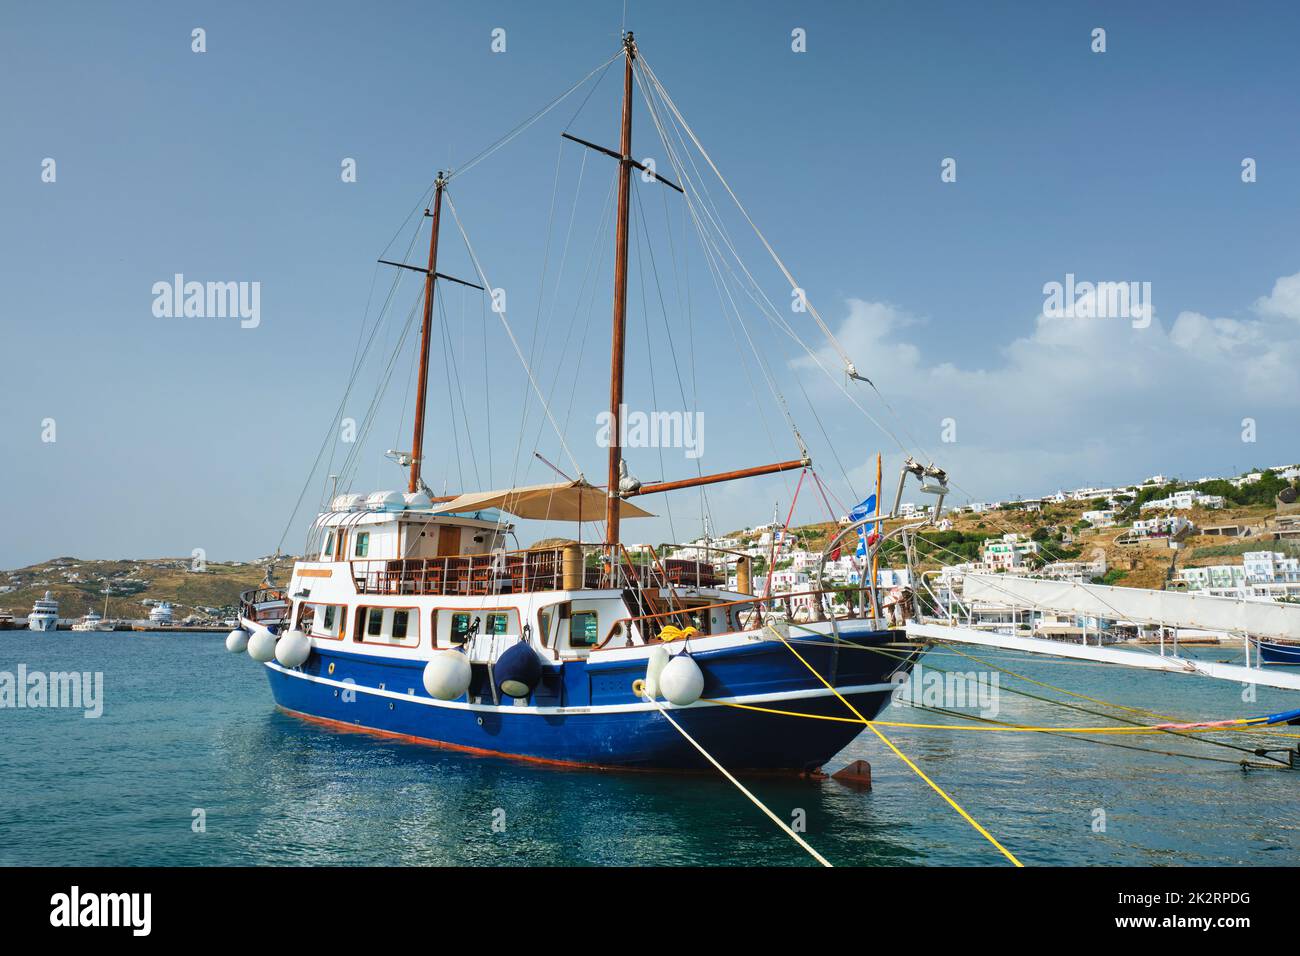 Vessel schooner moored in port harbor of Mykonos island, Greece Stock Photo